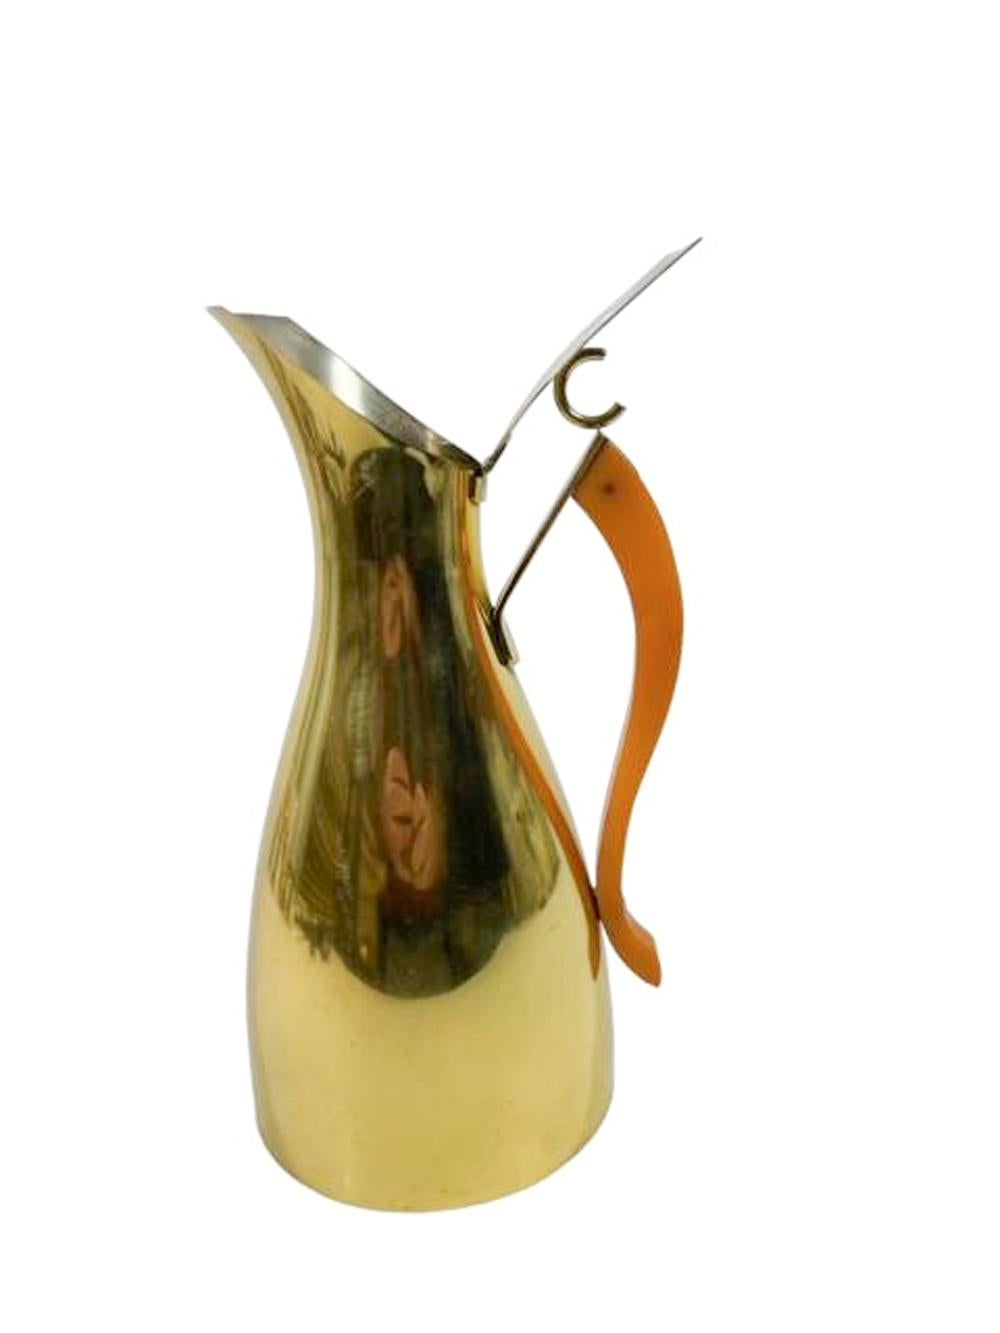 Italienischer modernistischer Barkrug aus Messing mit Scharnierdeckel und spitz zulaufendem, S-förmig gebogenem Bakelit-Henkel in Karamell. Gekennzeichnet auf der Unterseite 